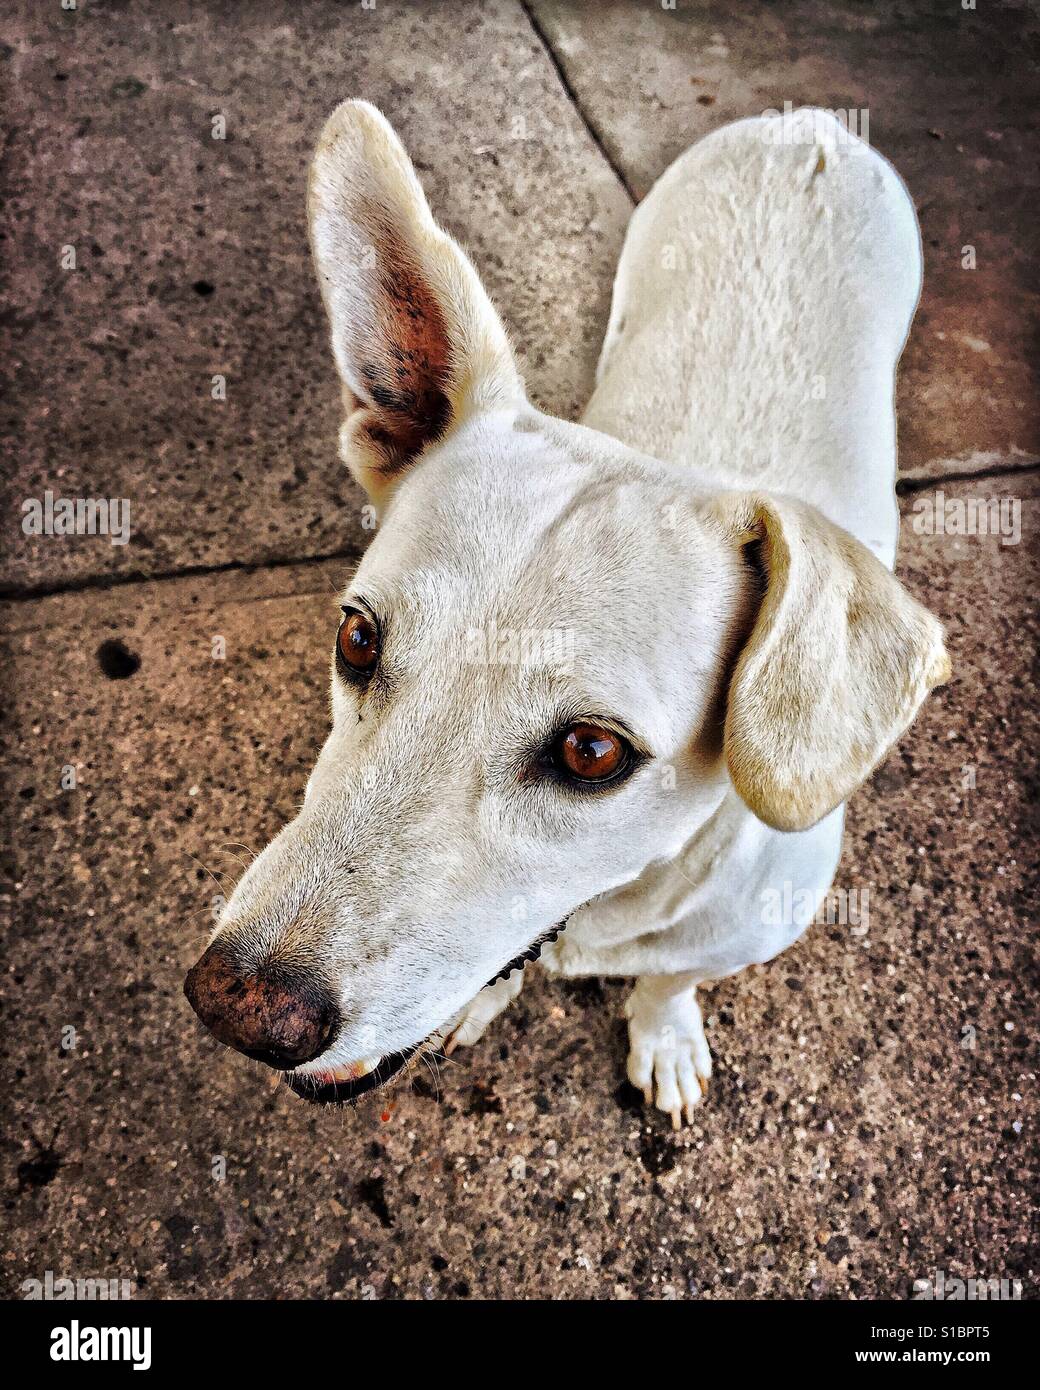 Un petit chien ressemble à une seule oreille tombante et une oreille droite. Banque D'Images